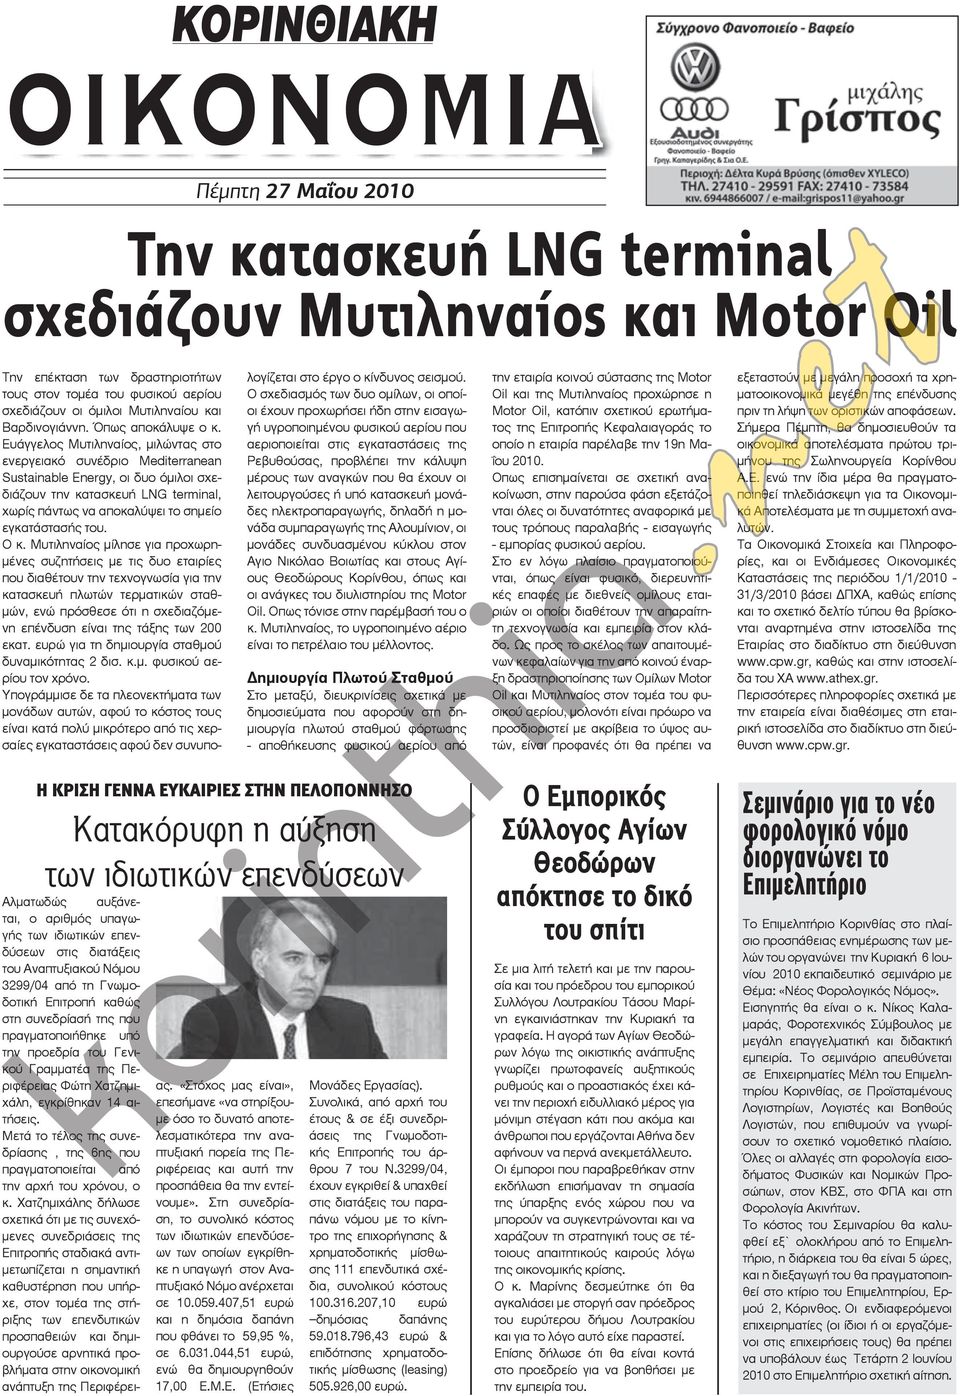 Ευάγγελος Μυτιληναίος, μιλώντας στο ενεργειακό συνέδριο Medierranean Susainable Energy, οι δυο όμιλοι σχεδιάζουν την κατασκευή LNG erminal, χωρίς πάντως να αποκαλύψει το σημείο εγκατάστασής του. Ο κ.